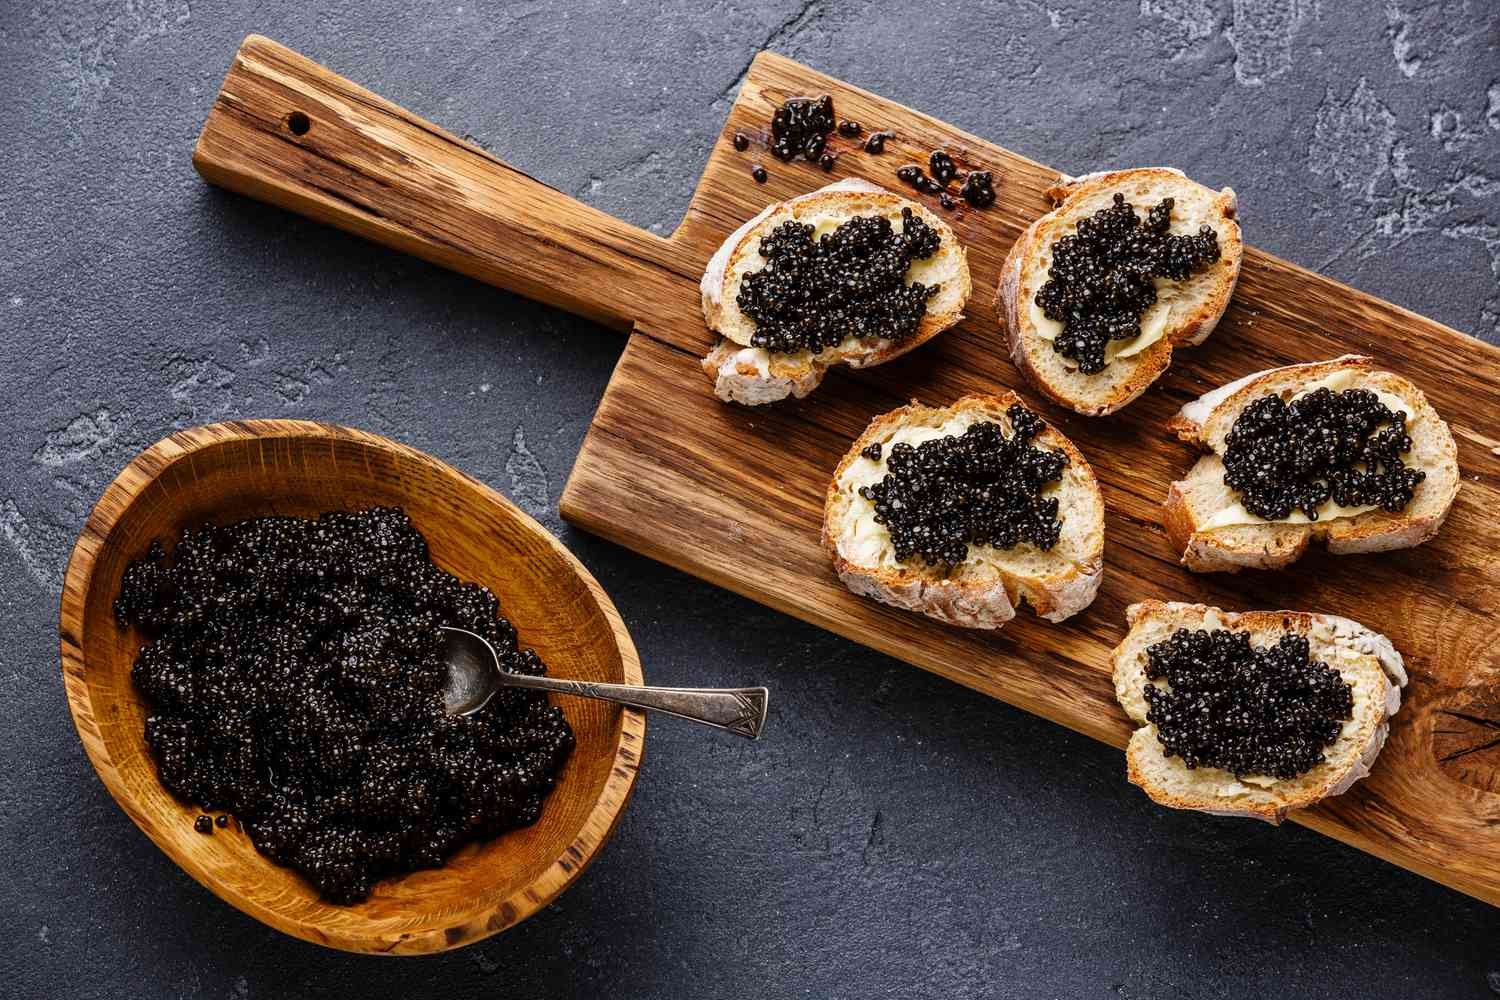 About Caviar